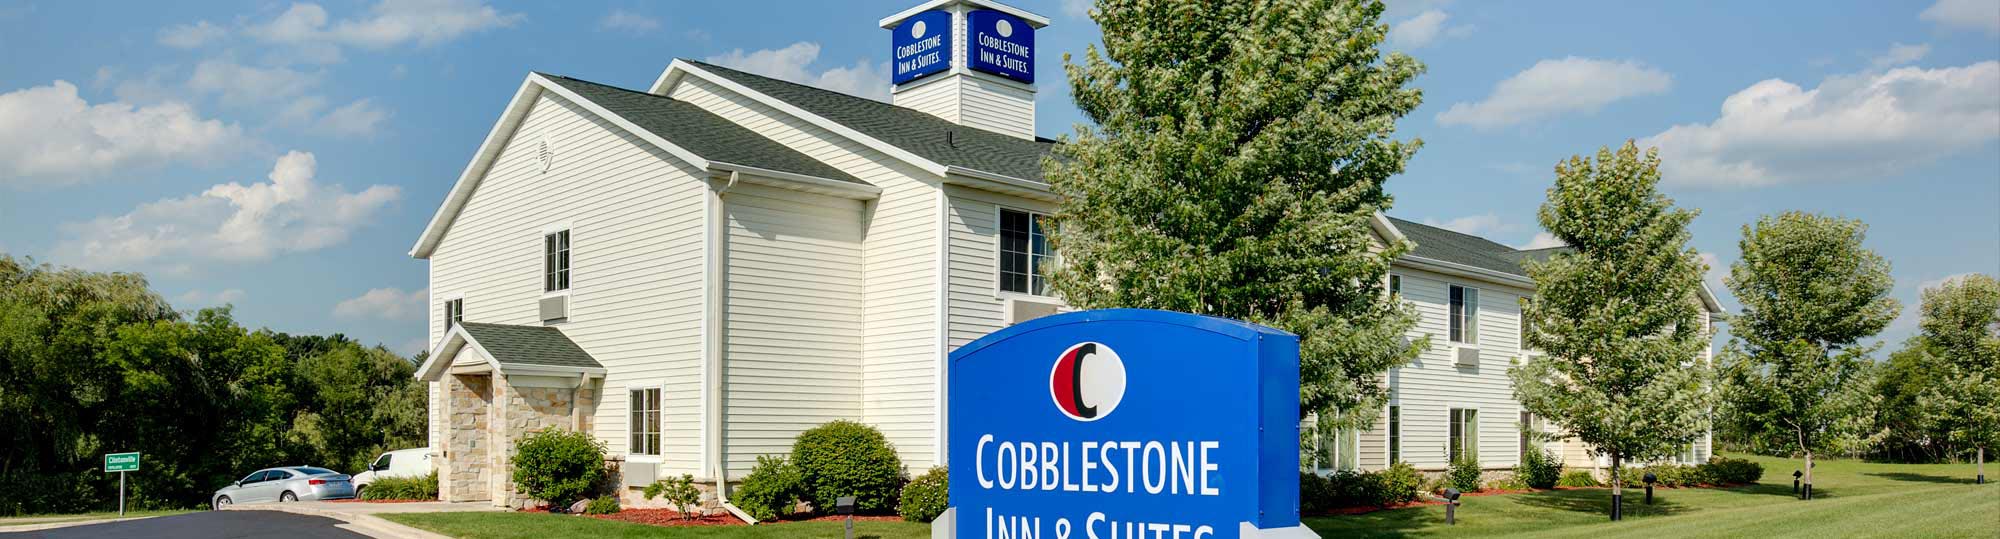 Cobblestone Inn & Suites Clintonville